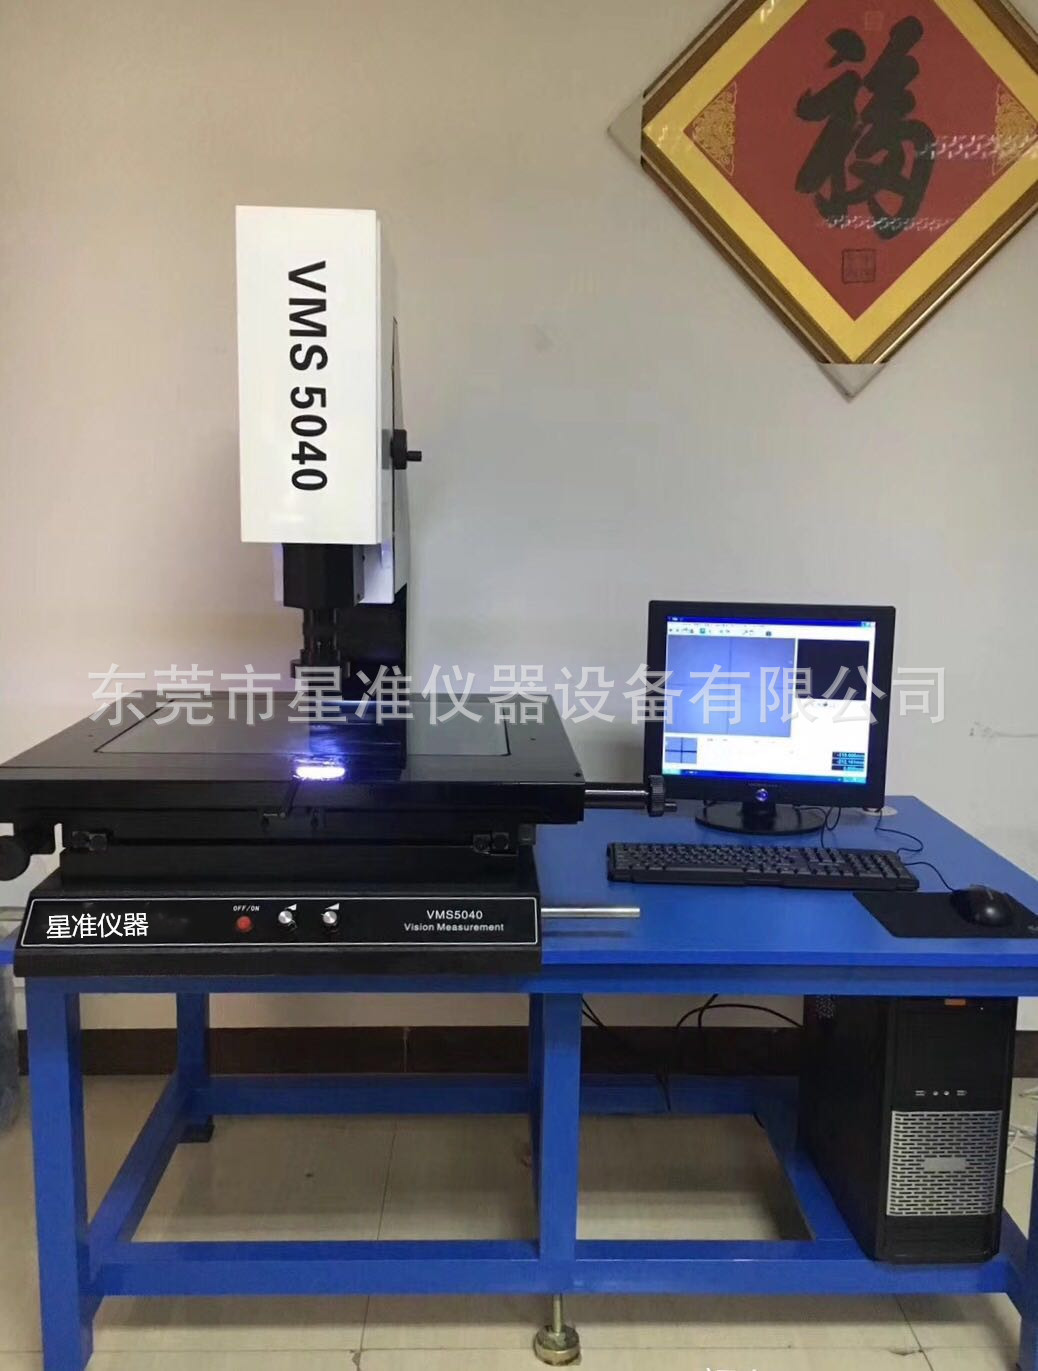 【星准仪器】厂家直销VMS3020二次元影像测量仪 免费送货上门安装培训8